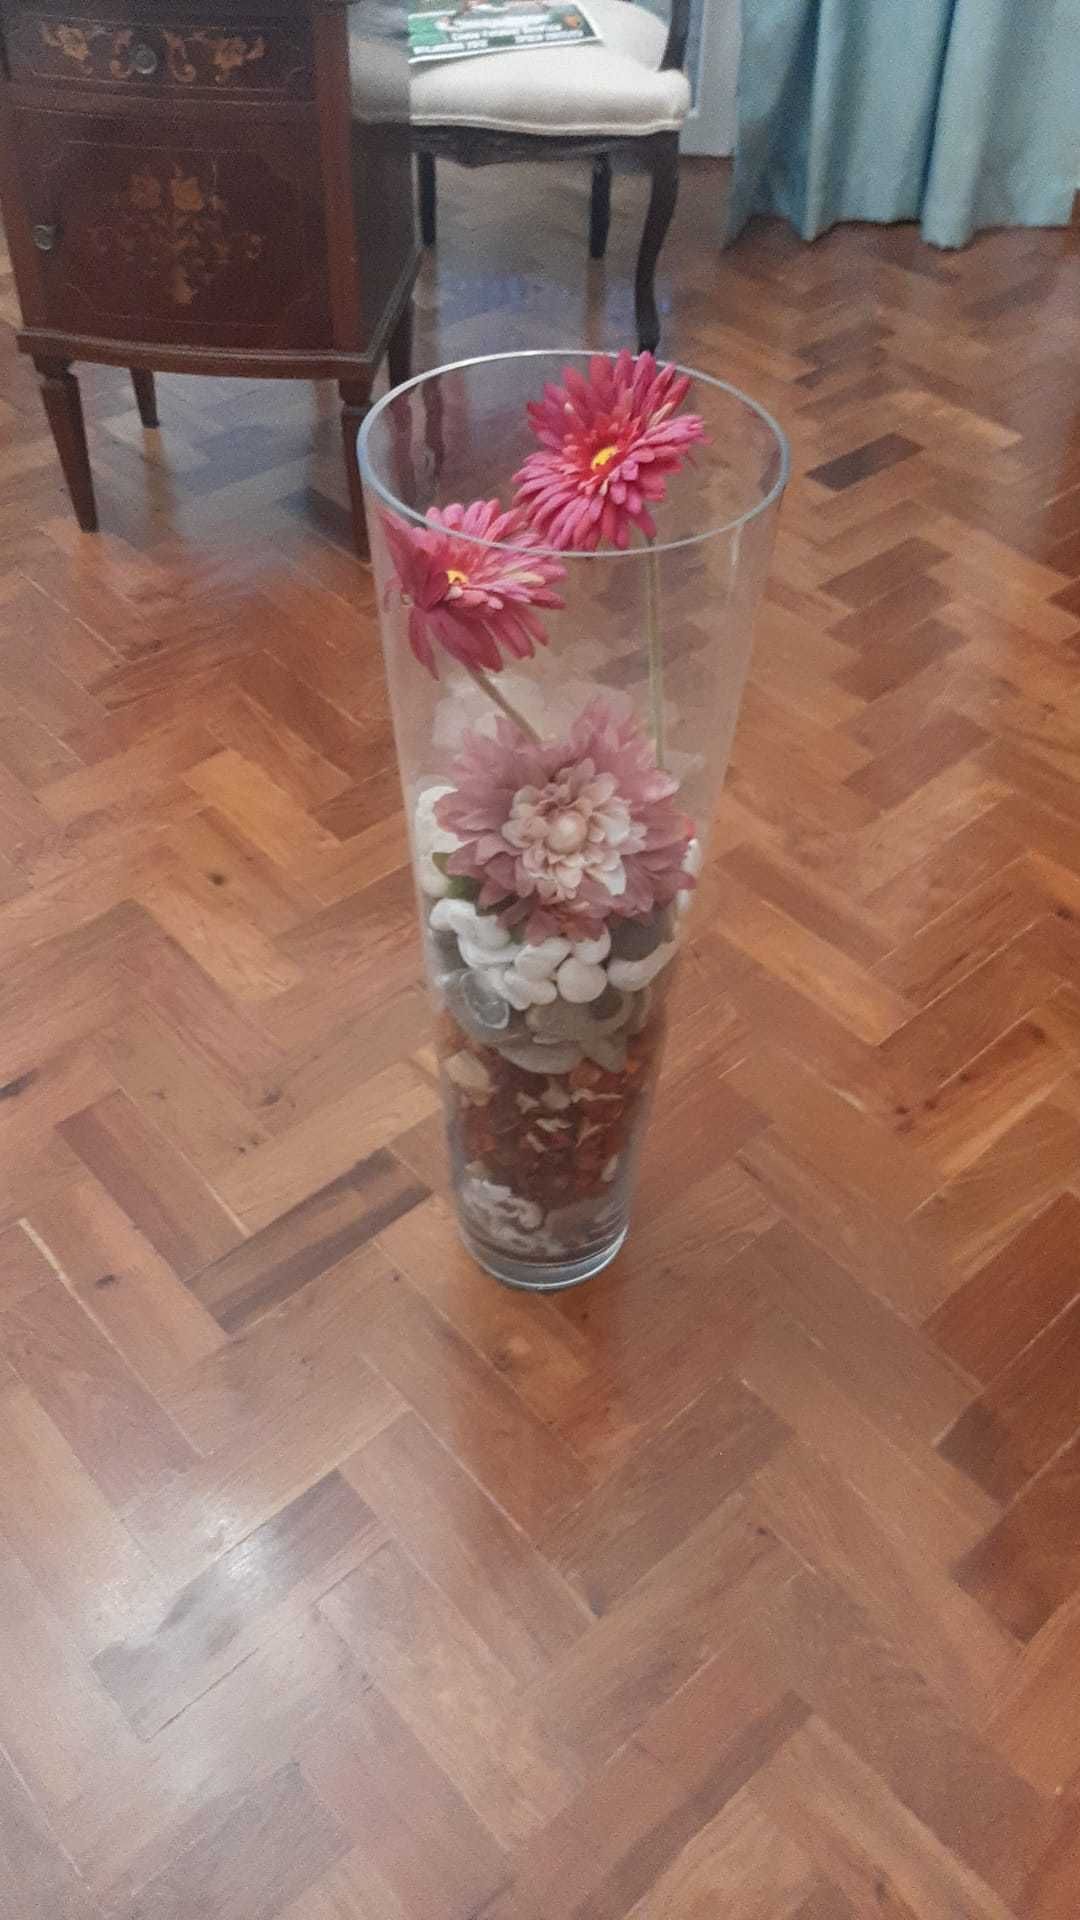 Vaso em Vidro decorativo com pedras e flores artificiais